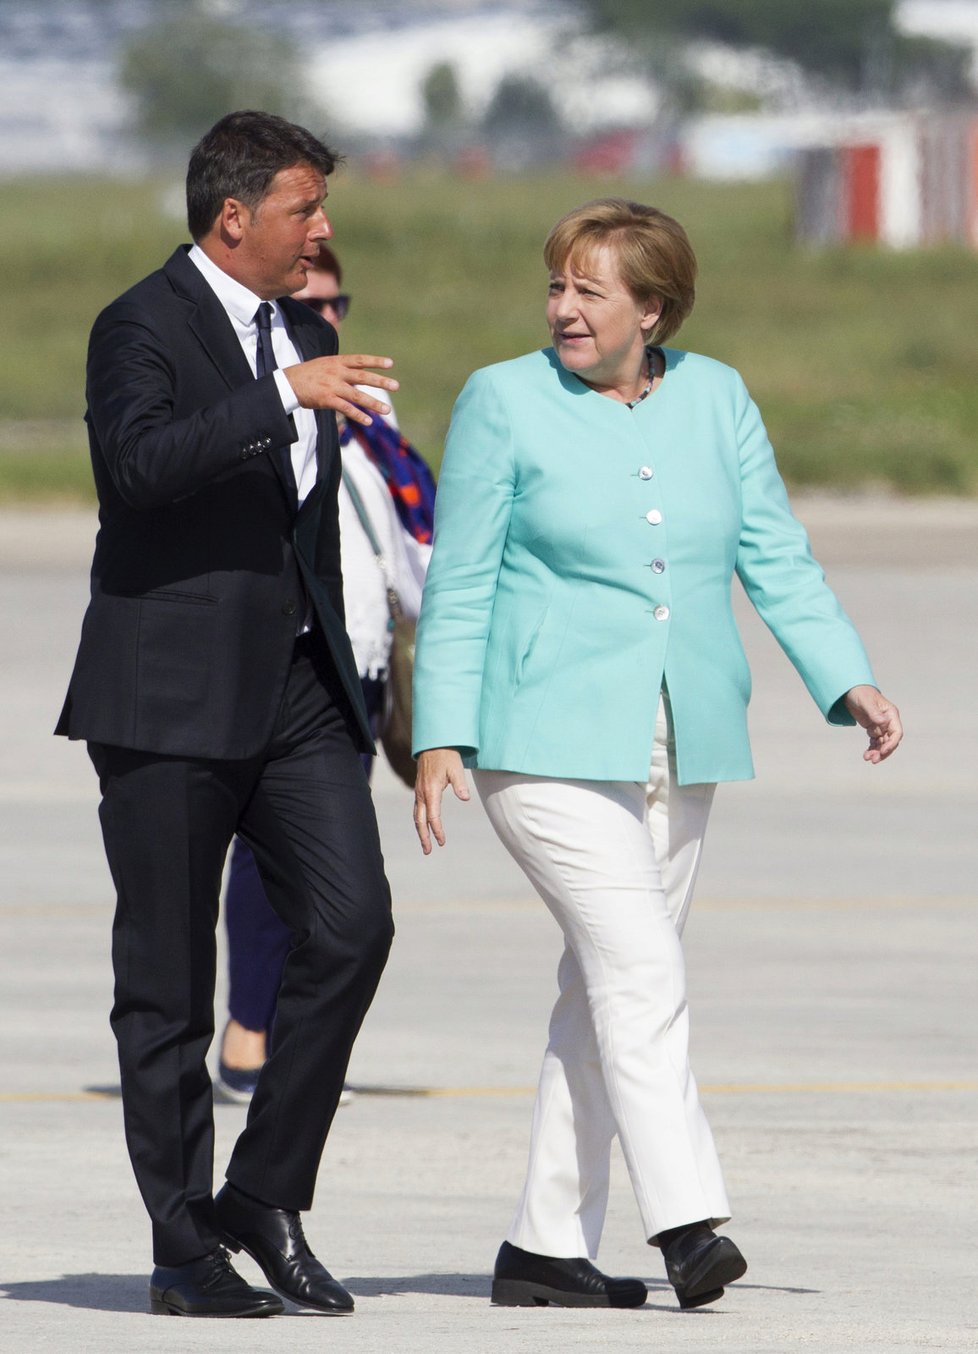 Merkelová, Hollande a Renzi hovořili o nových impulzech pro EU.